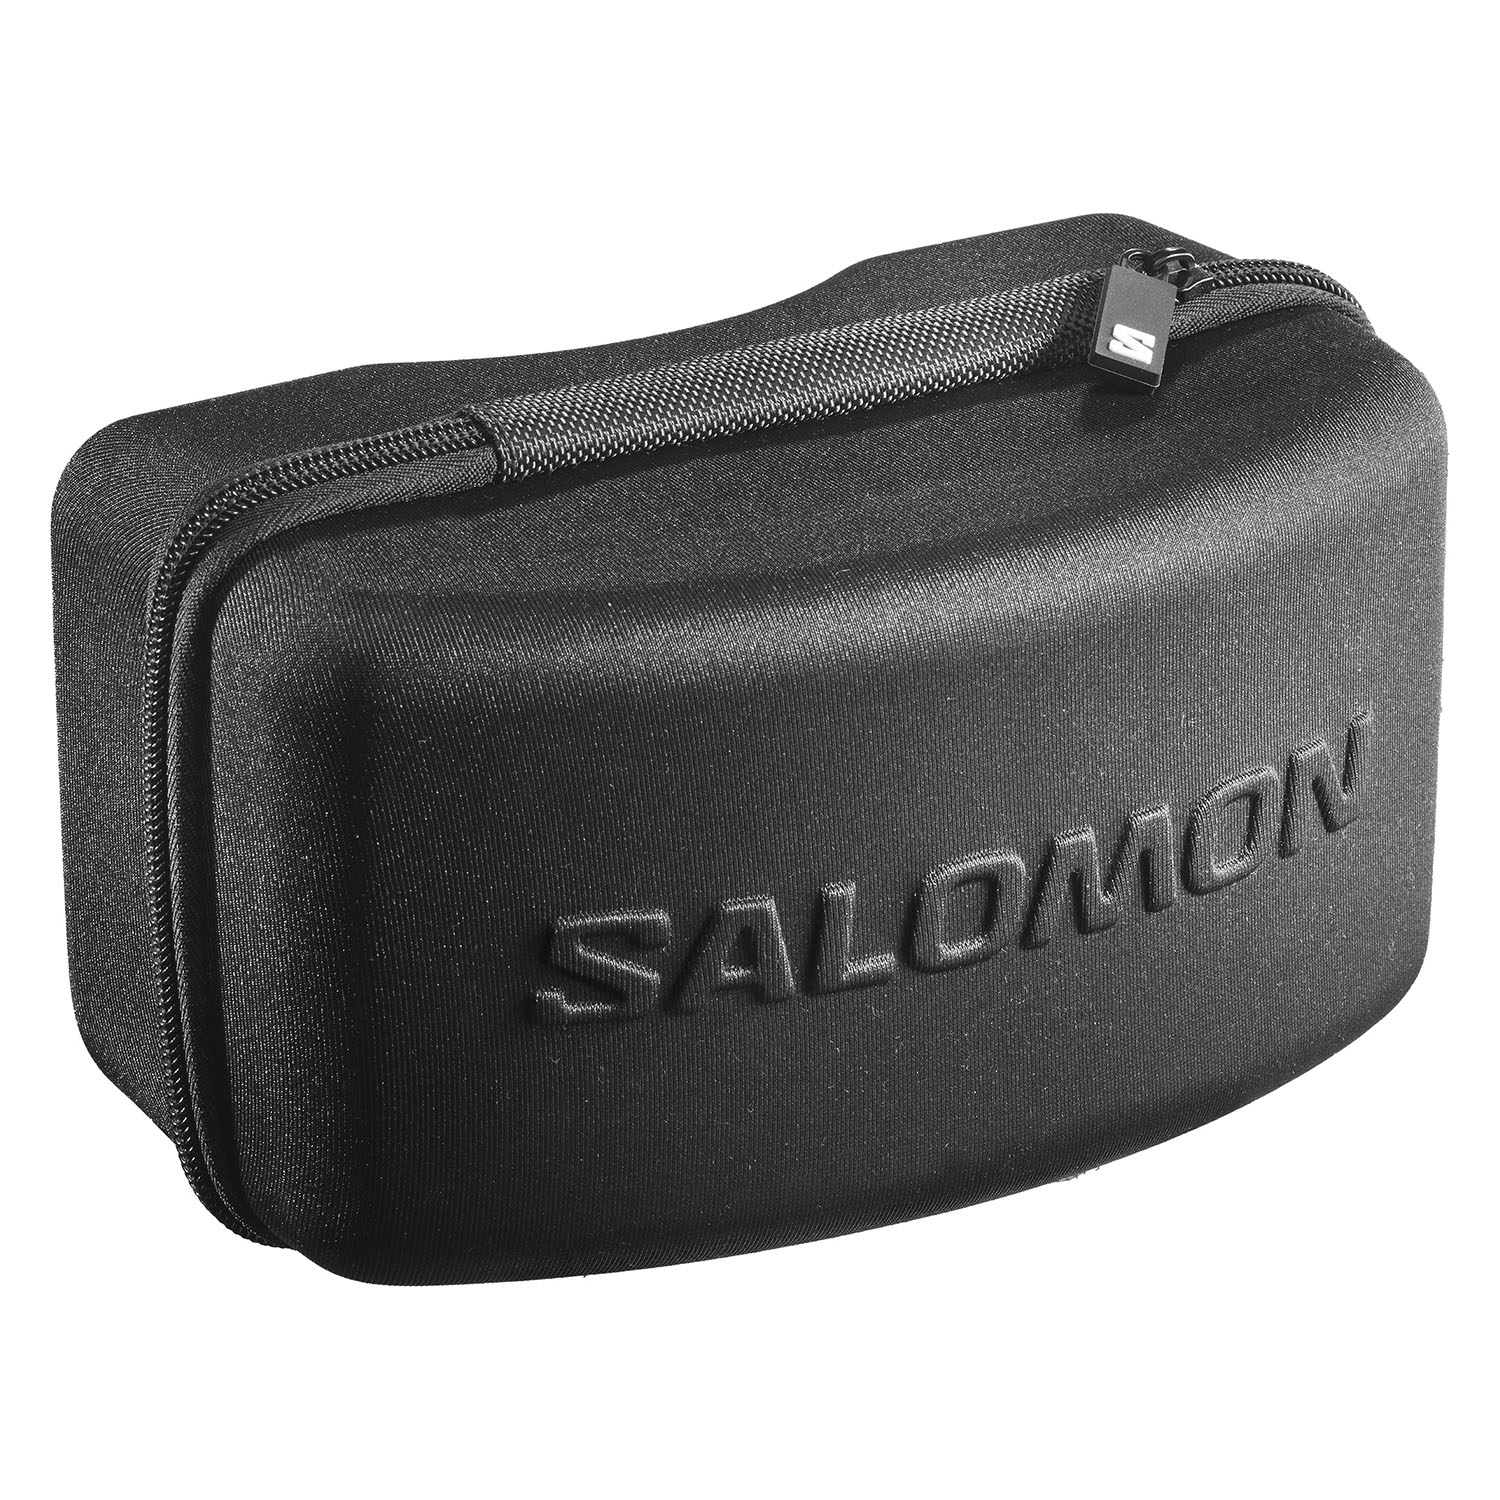 Очки горнолыжные SALOMON Sentry Pro Sigma Olive Night